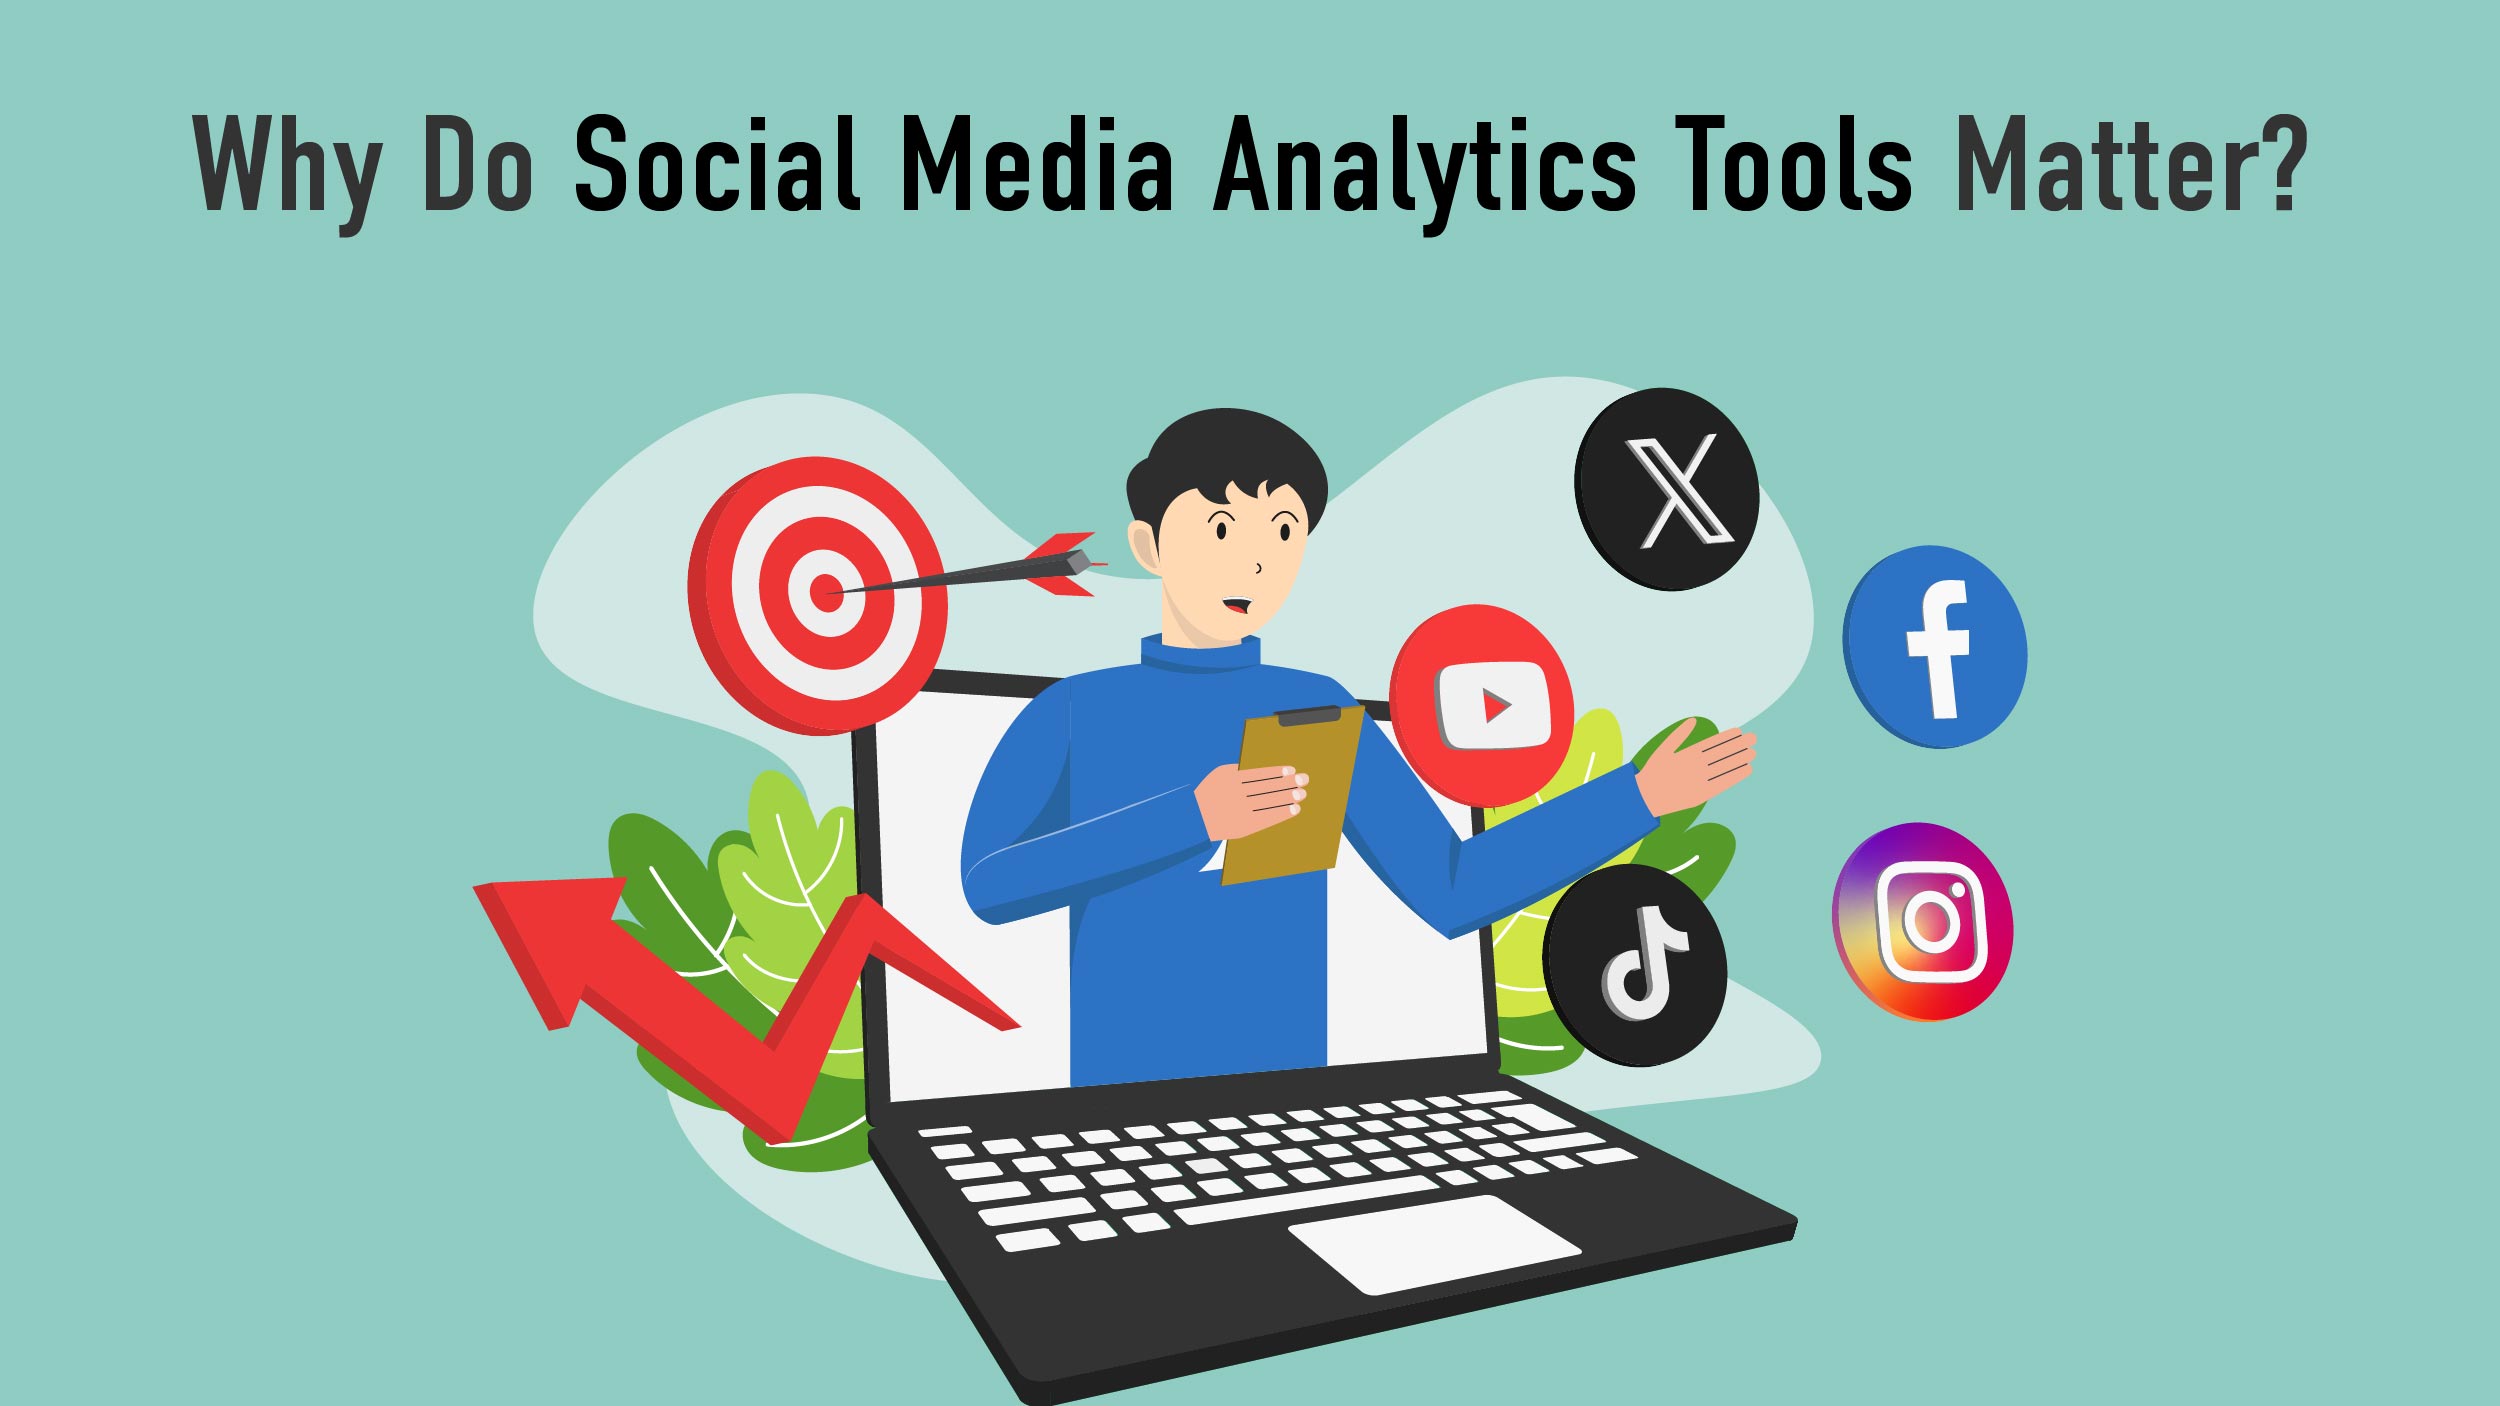 Social media analytics tools